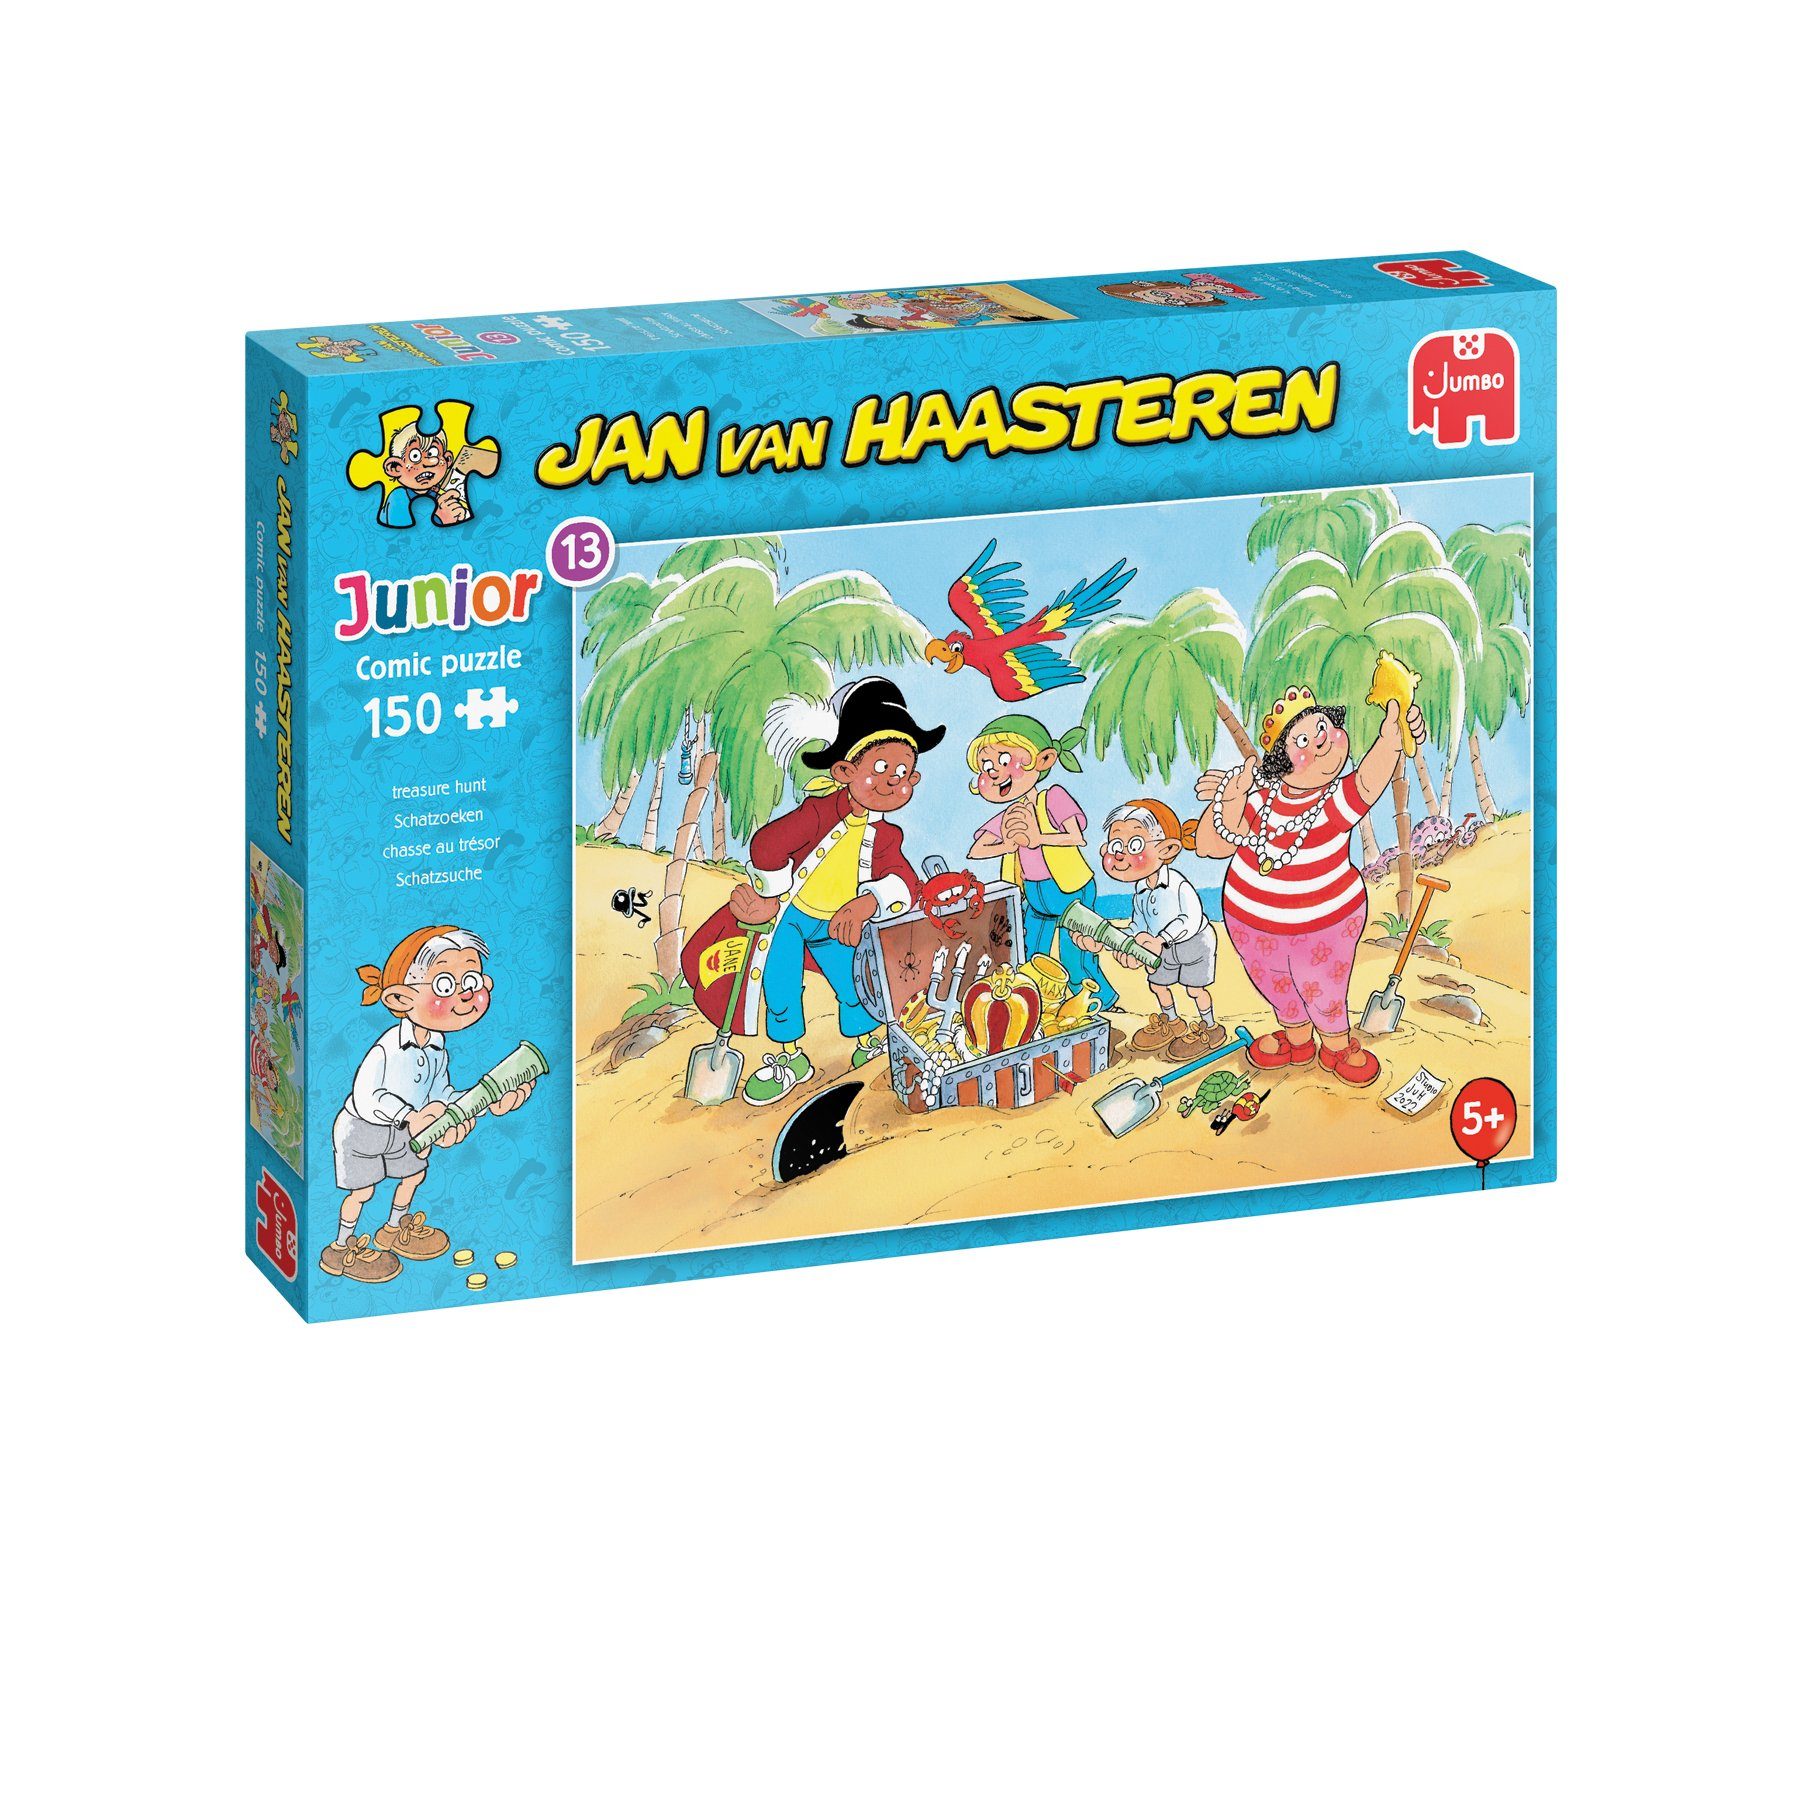 Jumbo Spiele Puzzle Jan van Haasteren Junior 13 Schatzsuche, 150 Puzzleteile